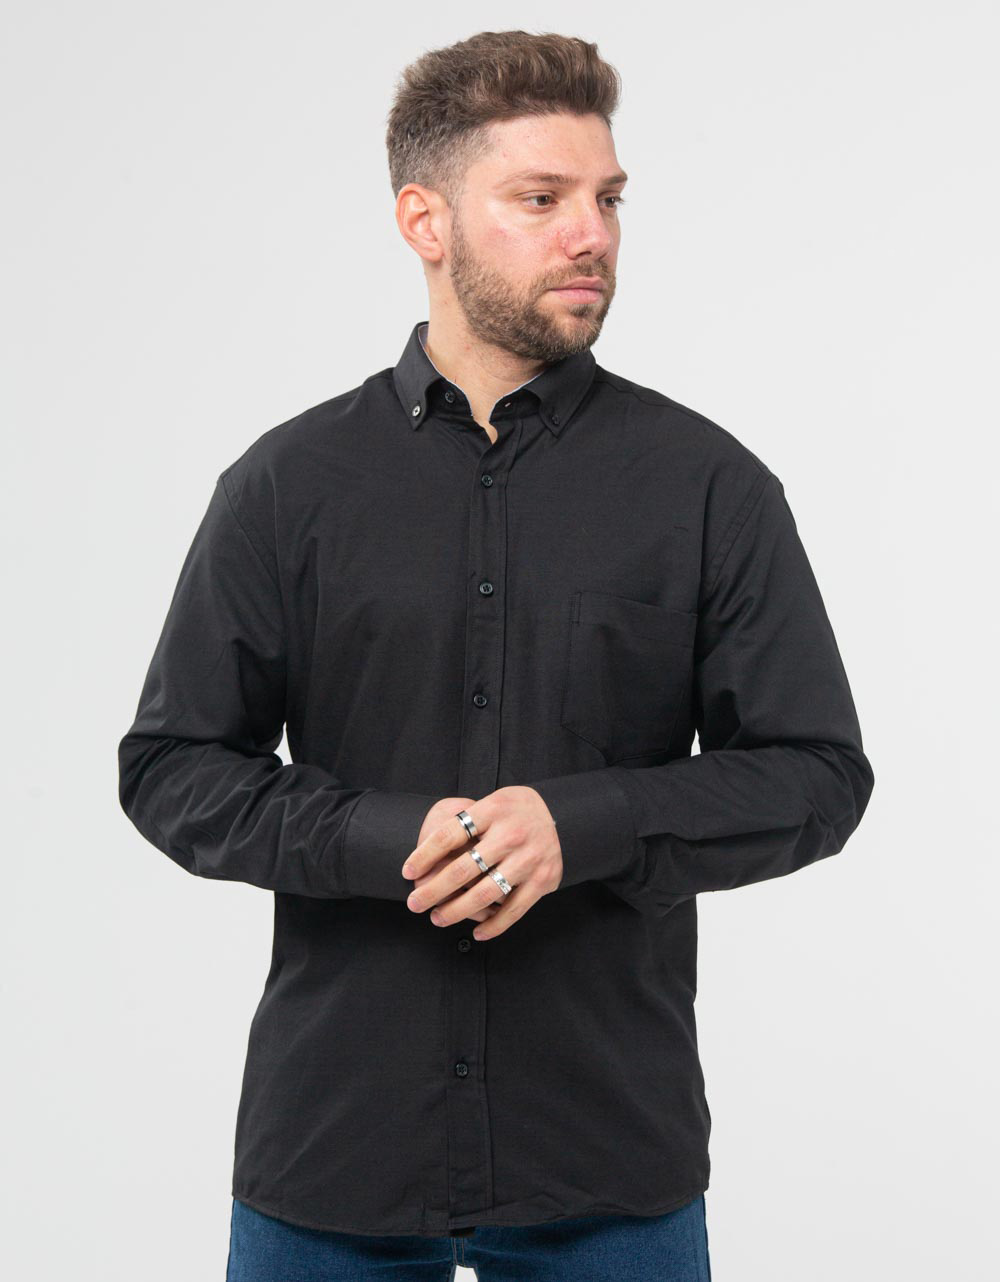 Ανδρικό πουκάμισο κλασσικό μαύρο